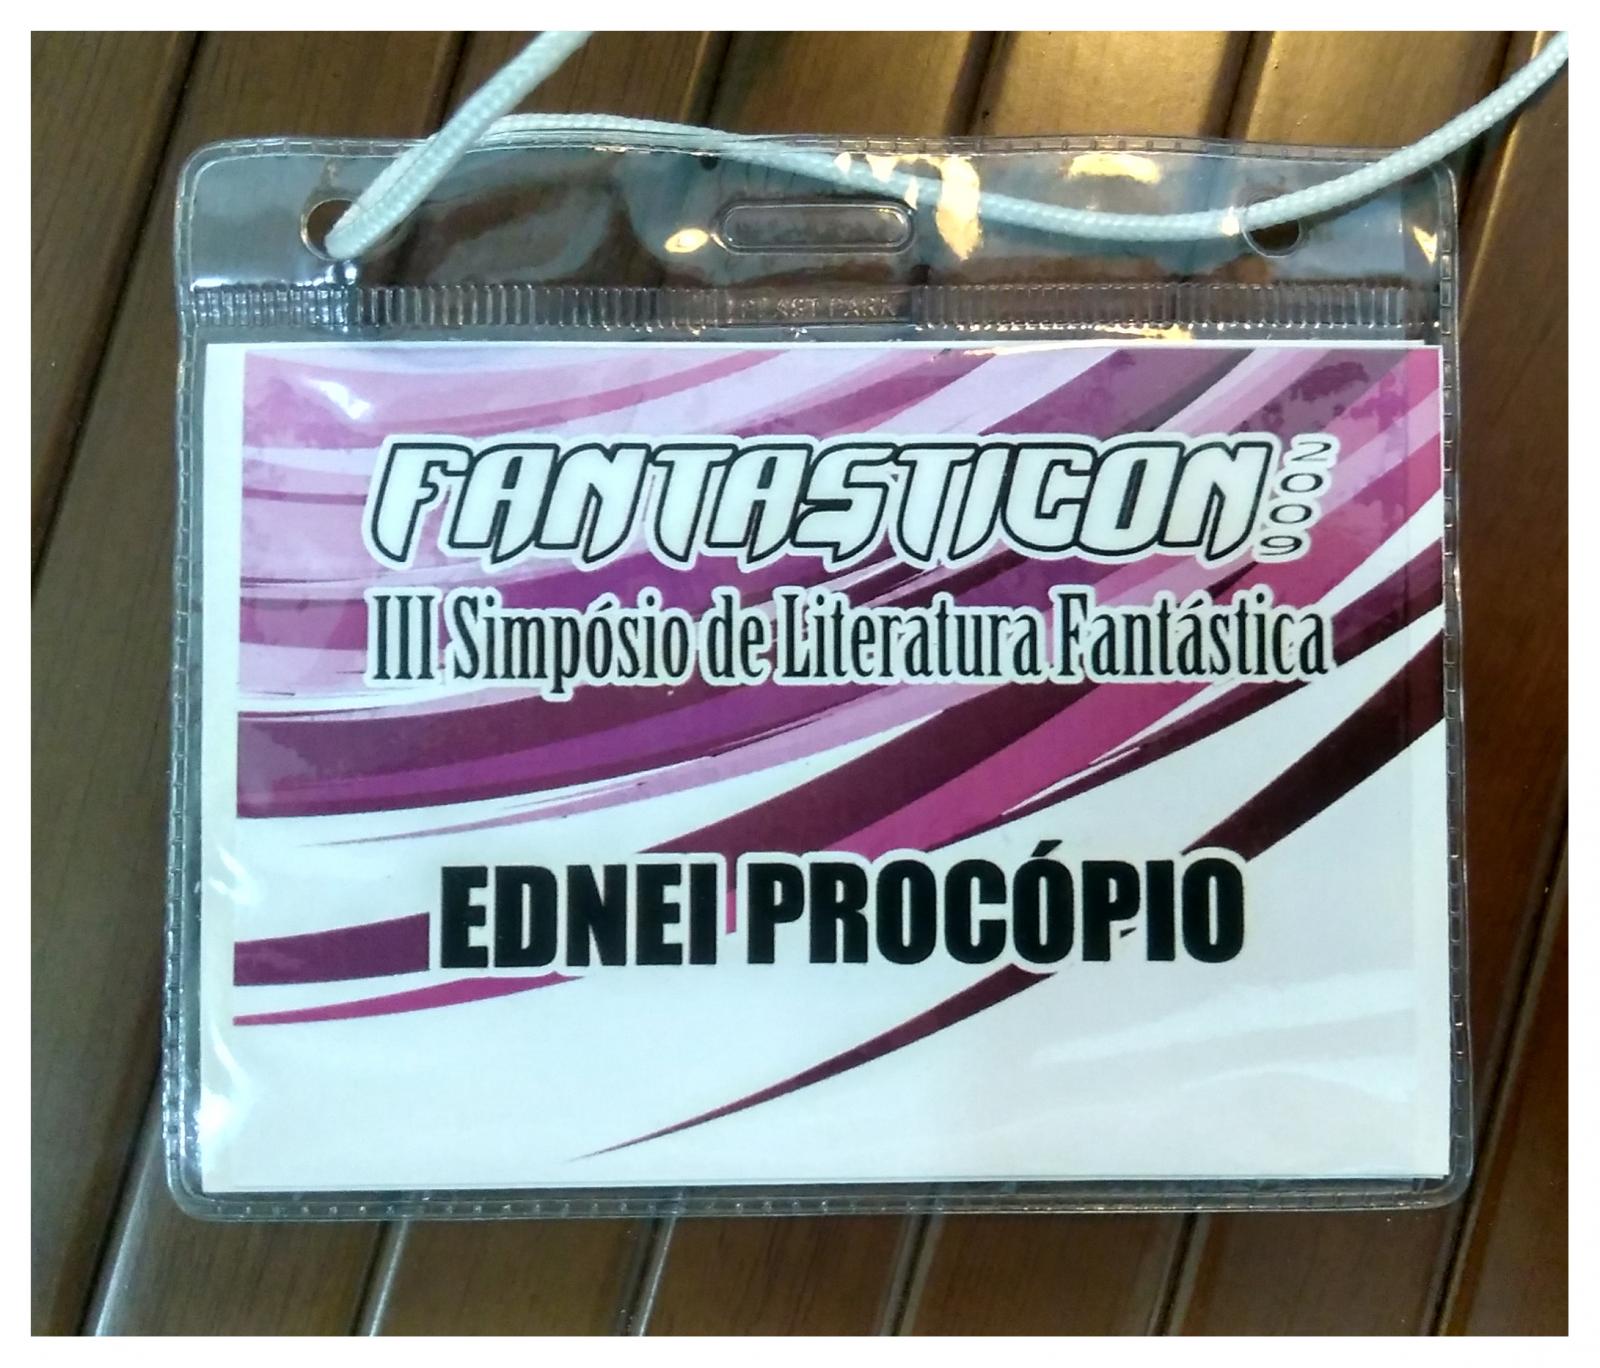 Participação de Ednei Procópio no III Simpósio de Literatura Fantástica (Fantasticon 2009).